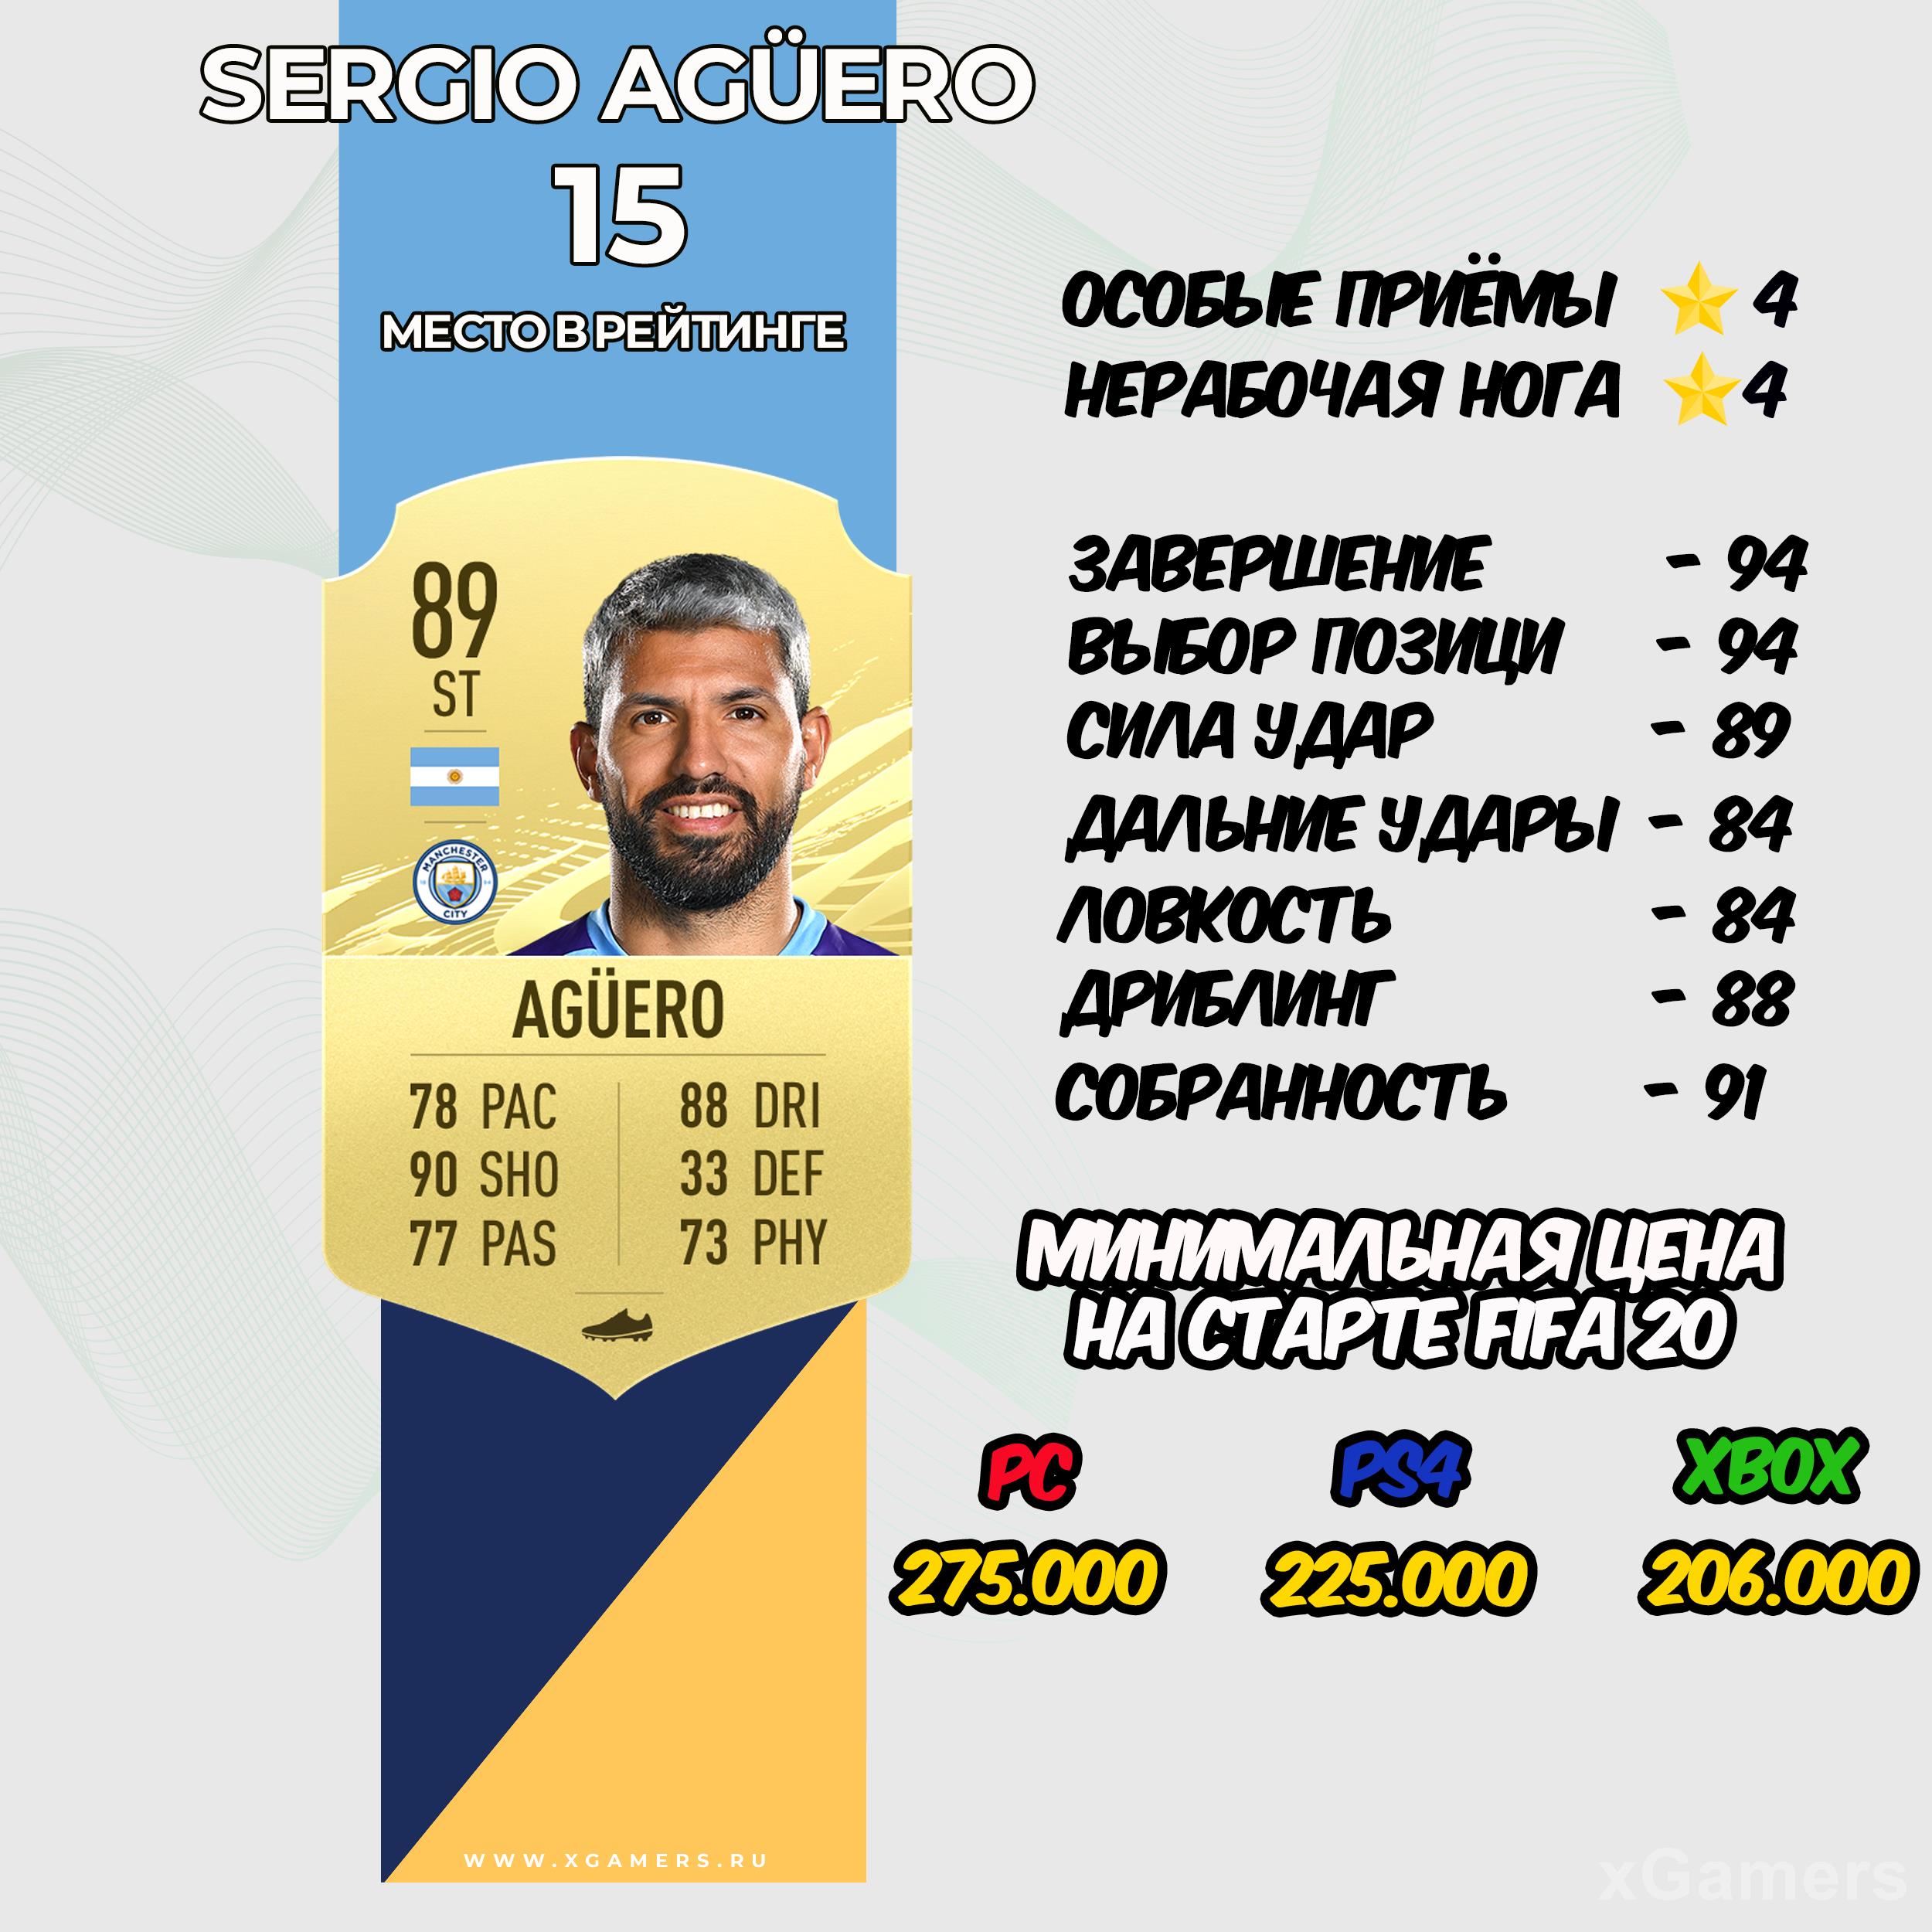 FIFA 21 Лучшие игроки по позициям - Sergio Agüero